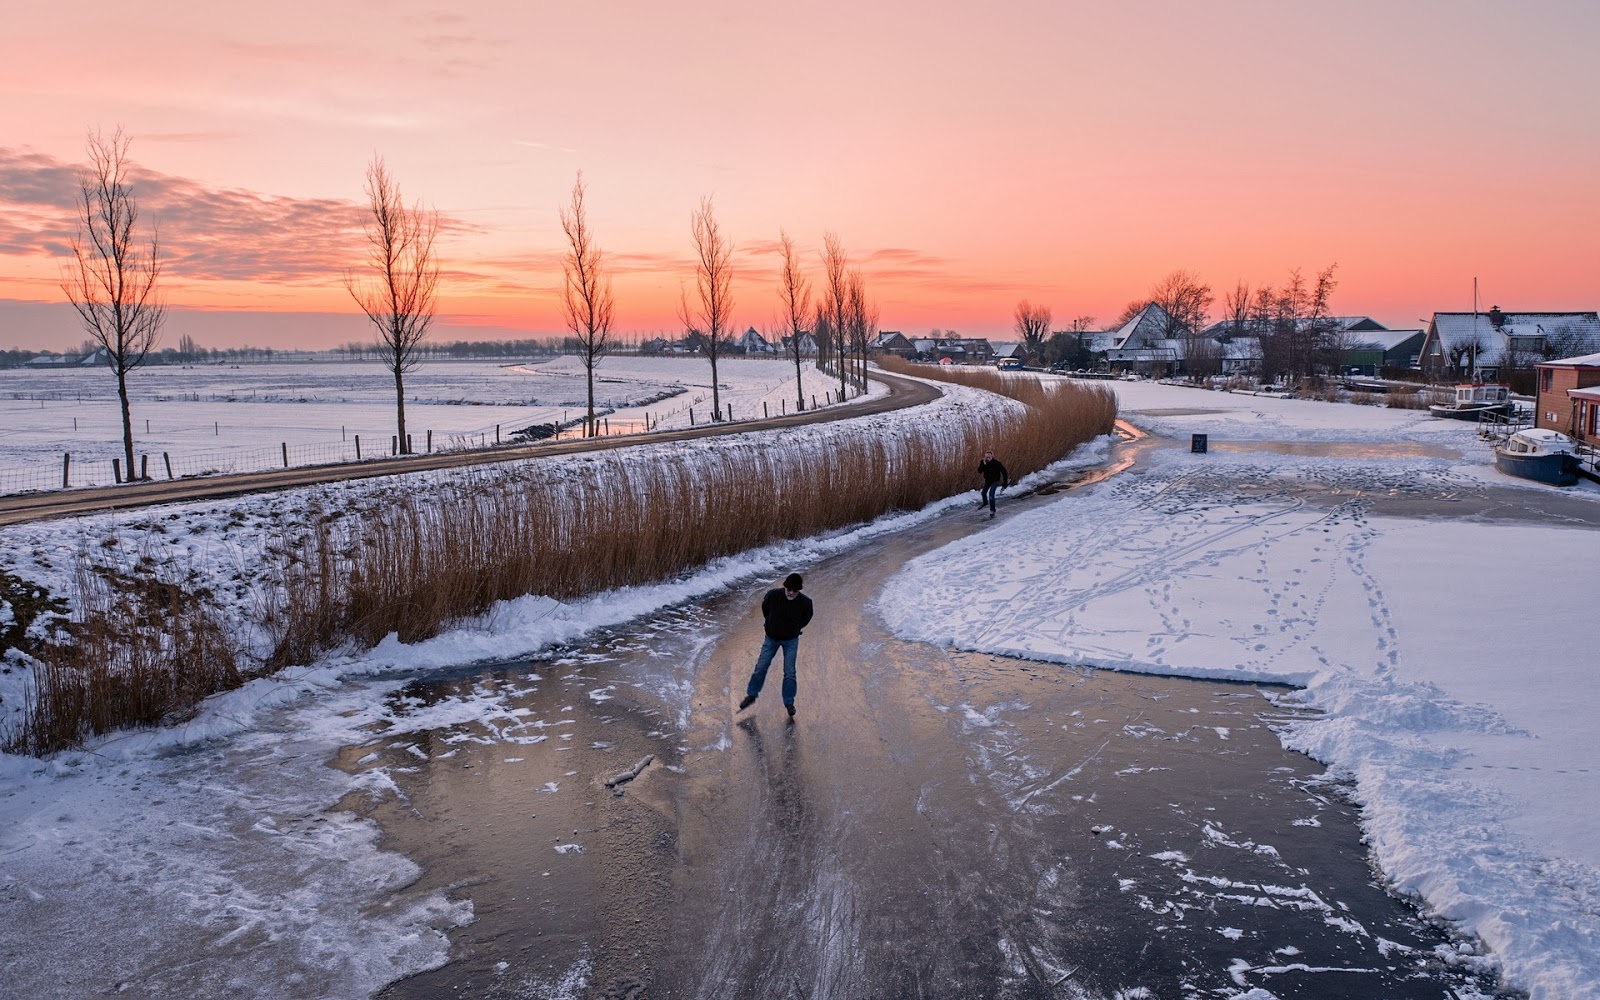 Schlittschuhlaufen Auf Natureis - Ice Skating On The Dutch Canals 2018 - HD Wallpaper 